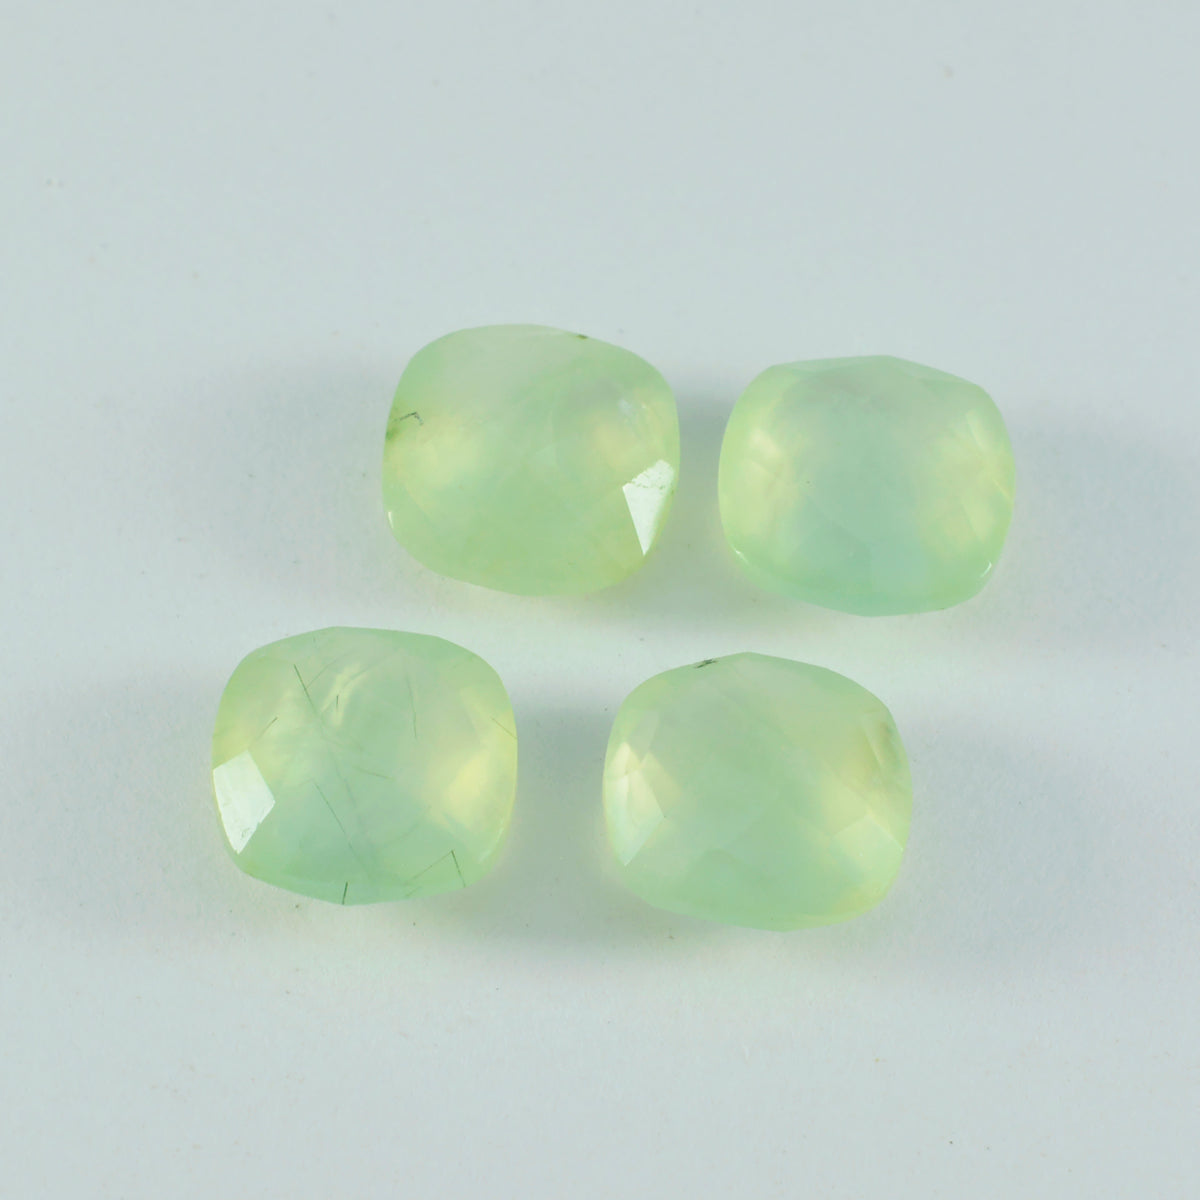 riyogems 1 pezzo di prehnite verde sfaccettata 10x10 mm a forma di cuscino, gemme sfuse di bellissima qualità